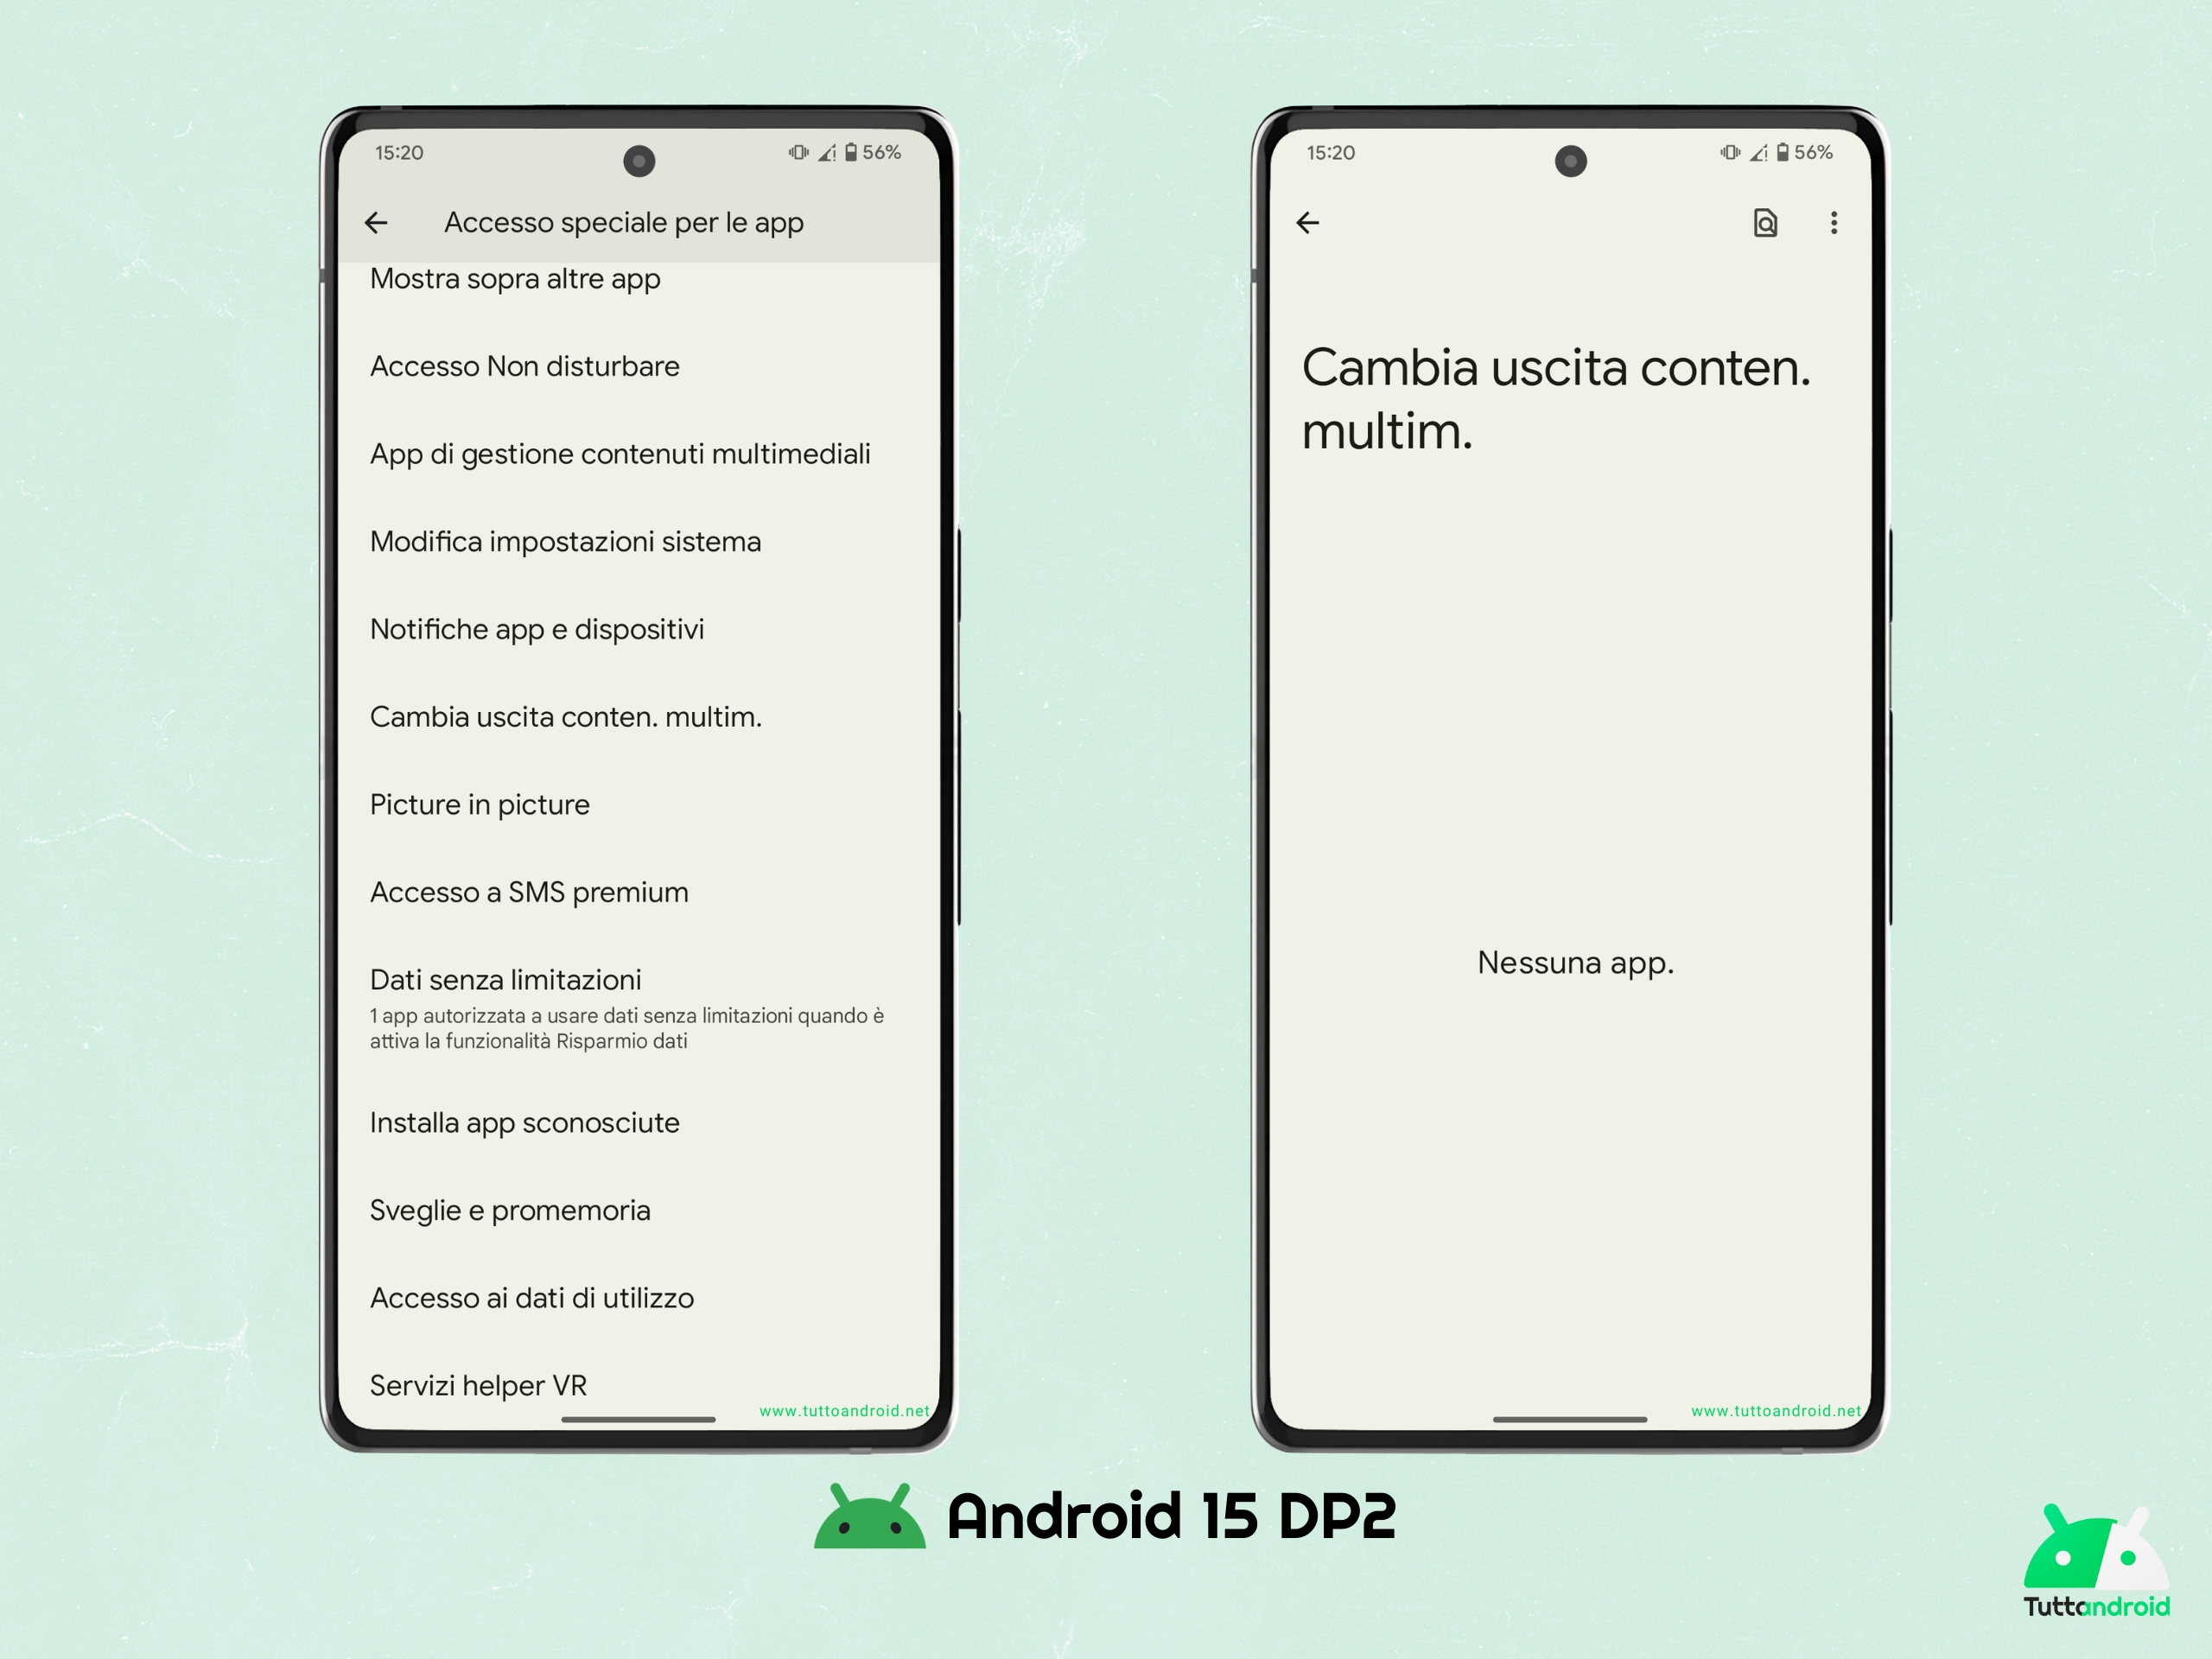 Android 15 DP2 - Cambia uscita contenuto multimediale